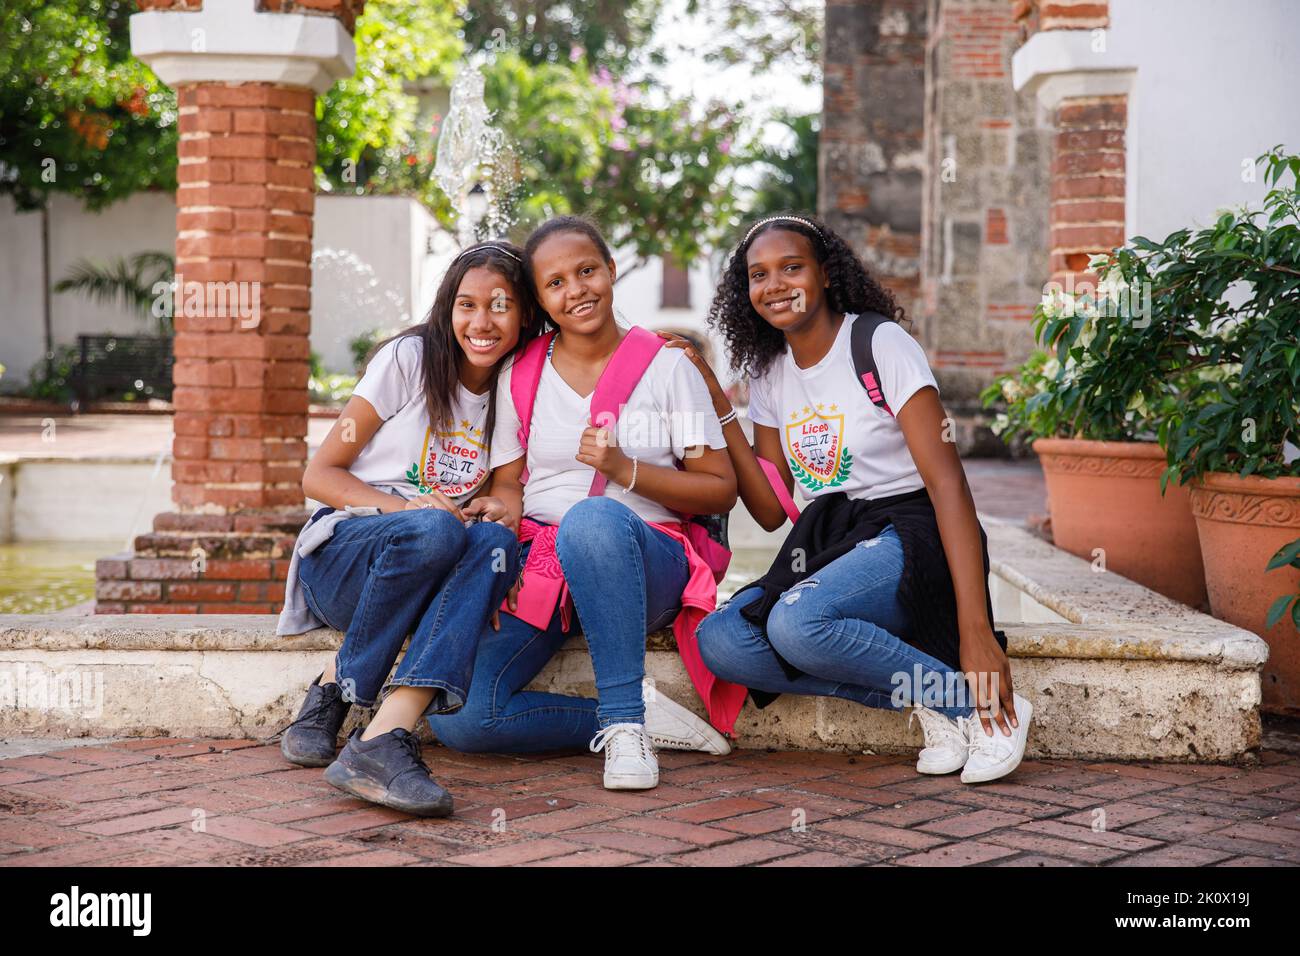 30.06.2022 Portrait Of Students. Dominican Republic. Santo Domingo. Stock Photo